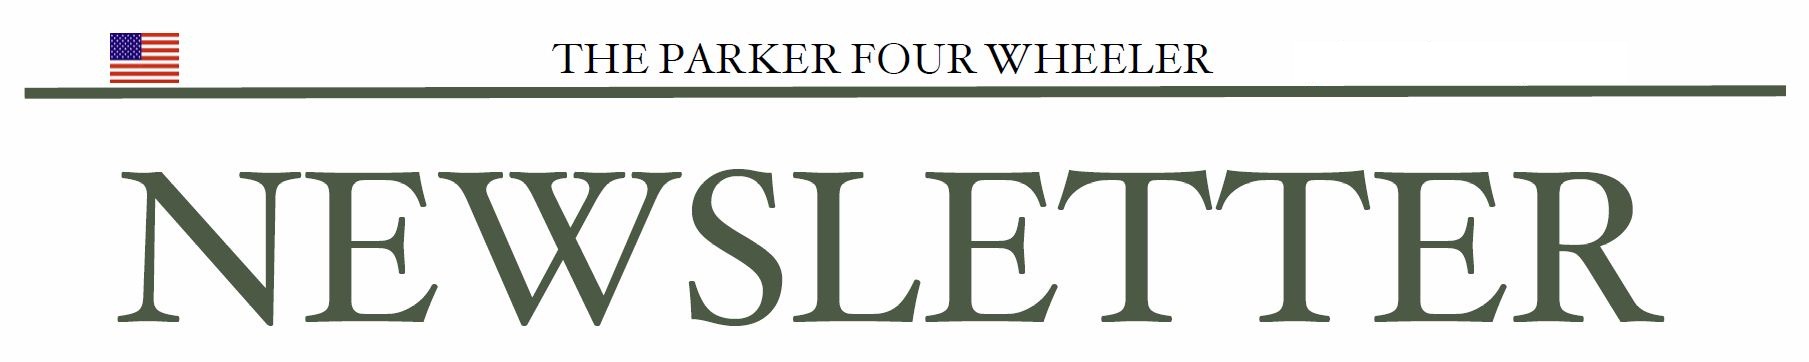 Parker 4 Wheeler Newsletter Heading